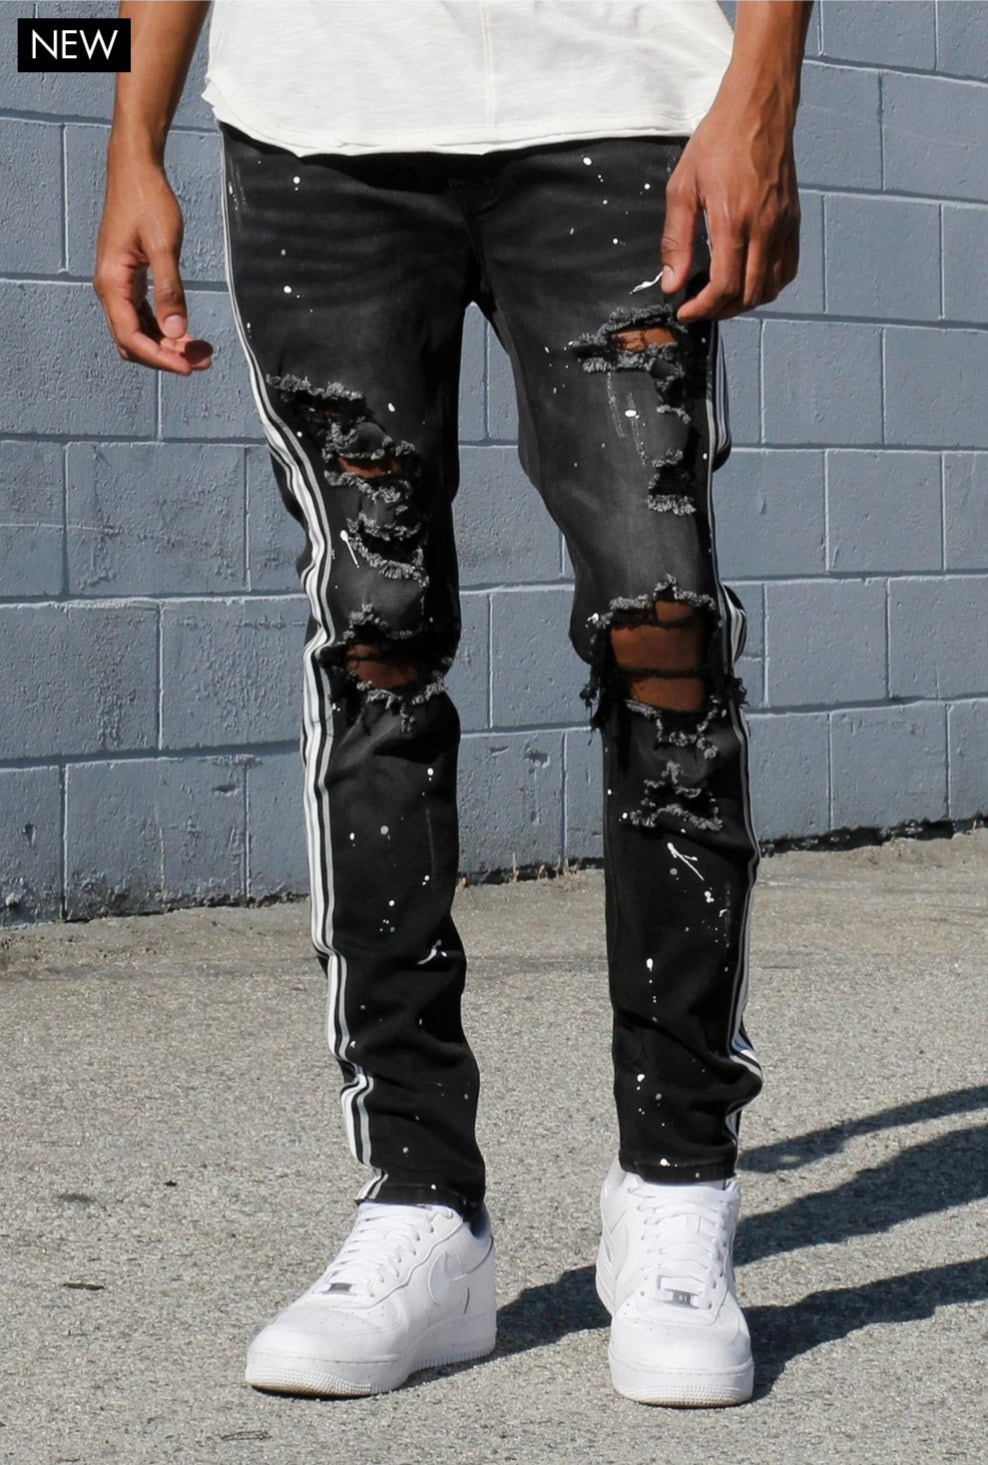 Men's Paint Splatter Jeans, Paint Splattered Jeans